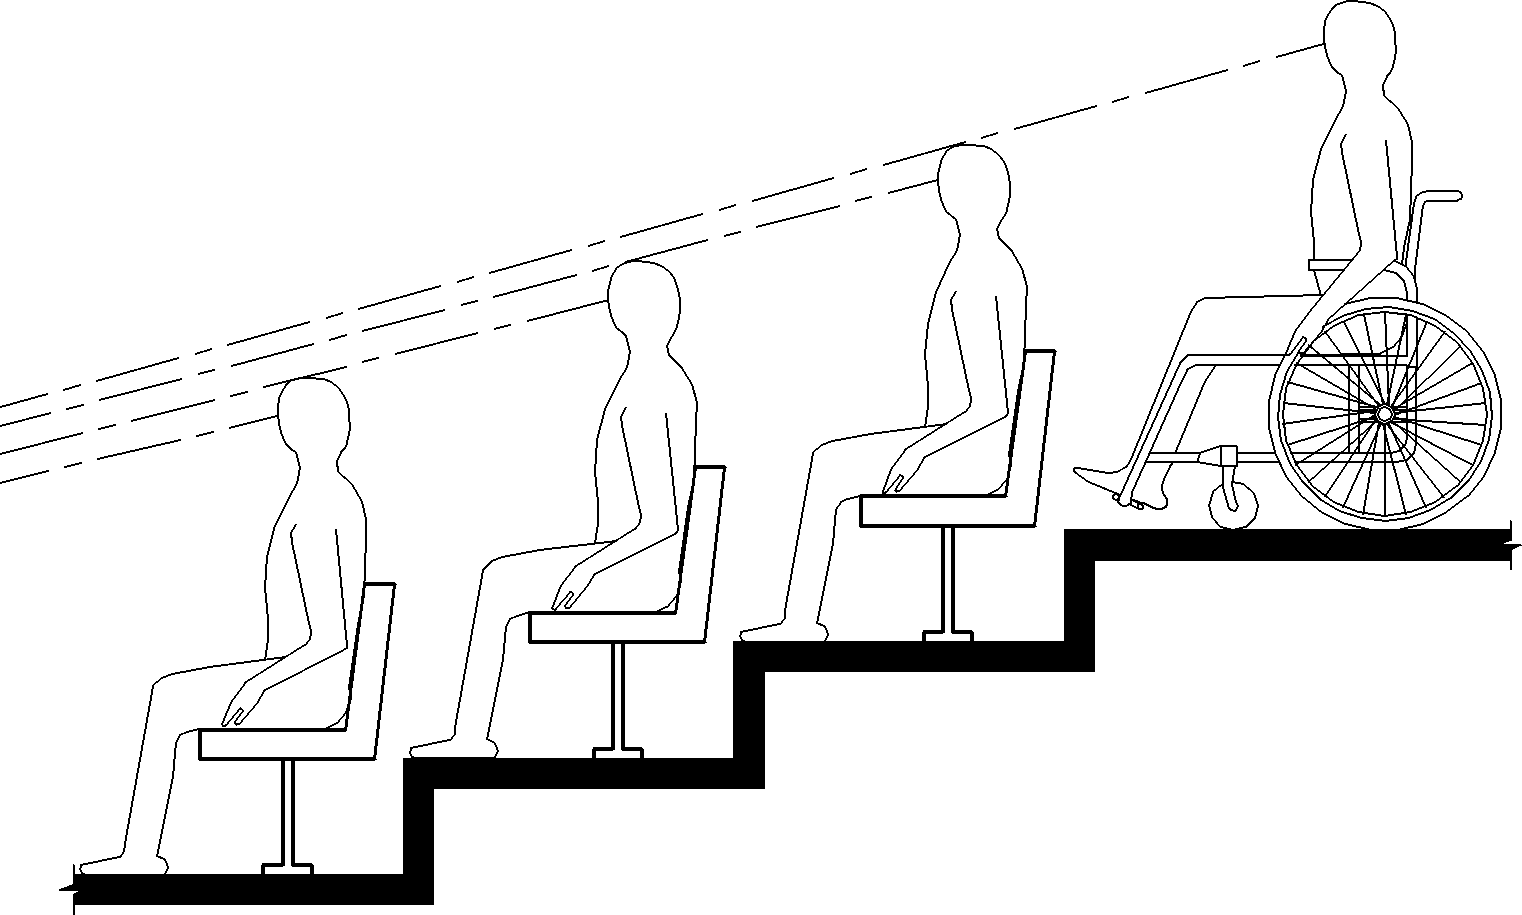 El dibujo de elevación muestra a una persona usando una silla de ruedas en un nivel superior de asientos escalonados que tiene una línea de visión sobre las cabezas de los espectadores sentados al frente